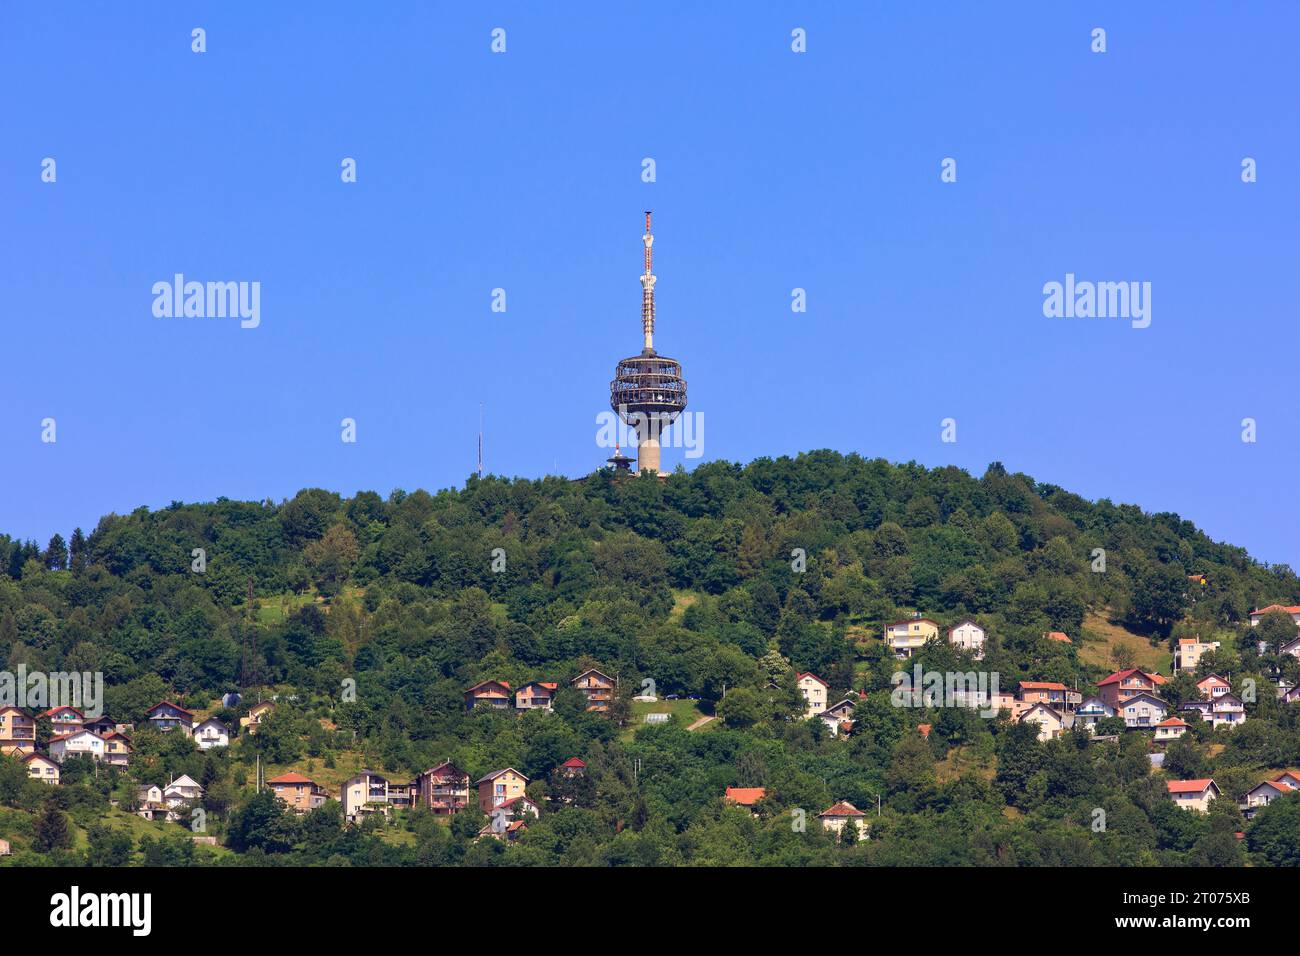 La Hum Tower, una torre di telecomunicazione alta 78,5 m (258 piedi) situata sul Monte Hum alla periferia di Sarajevo, Bosnia ed Erzegovina Foto Stock